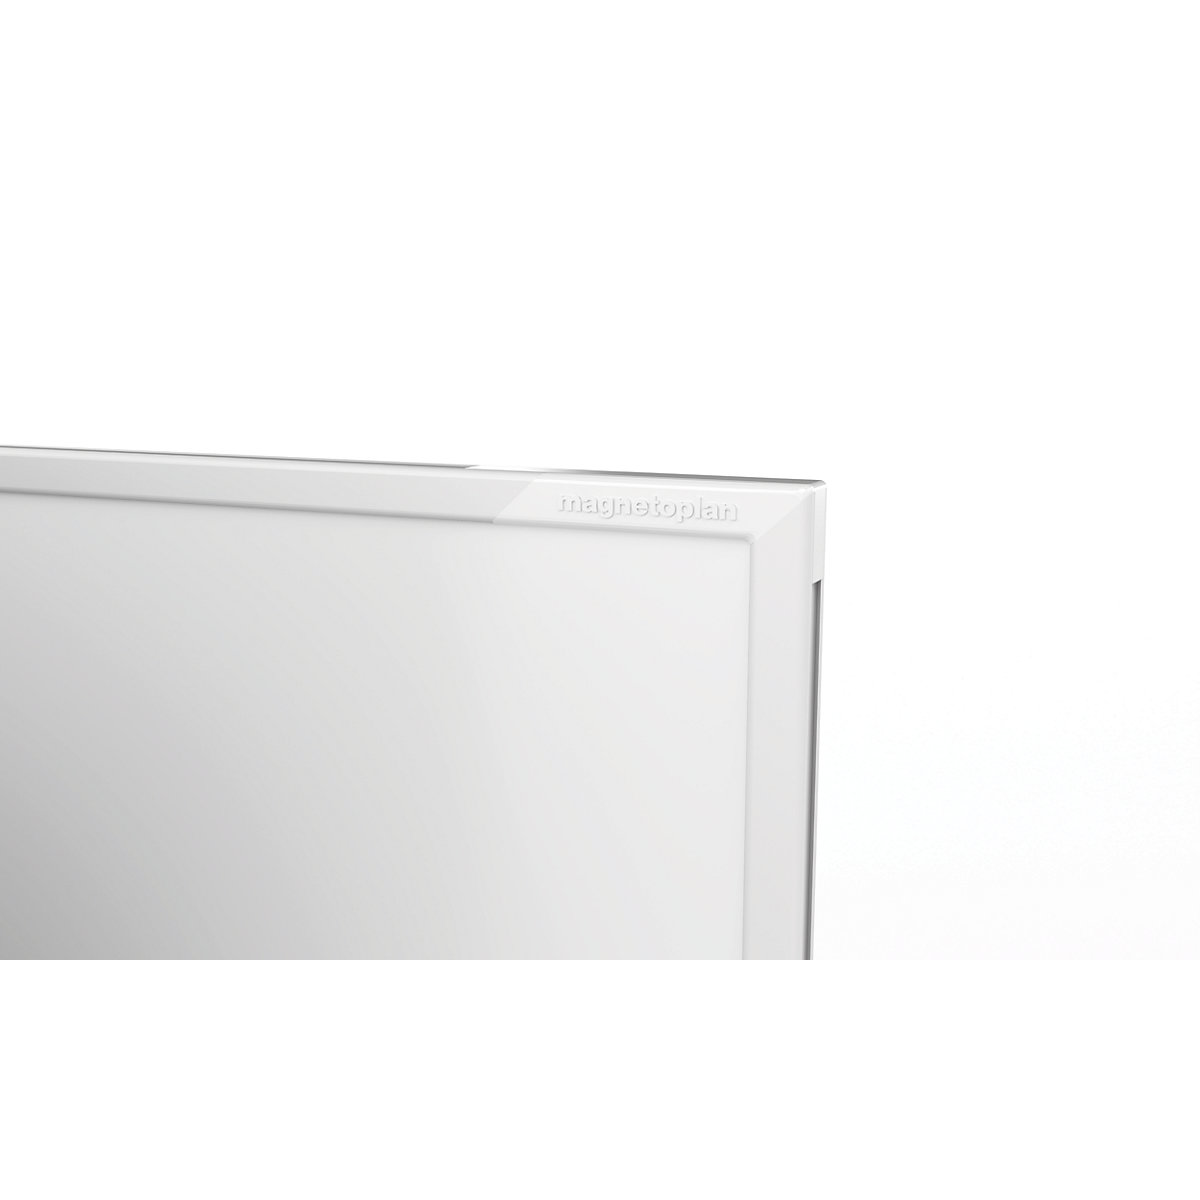 Elegantna bela tabla VARIO, pomična – magnetoplan (Slika izdelka 2)-1